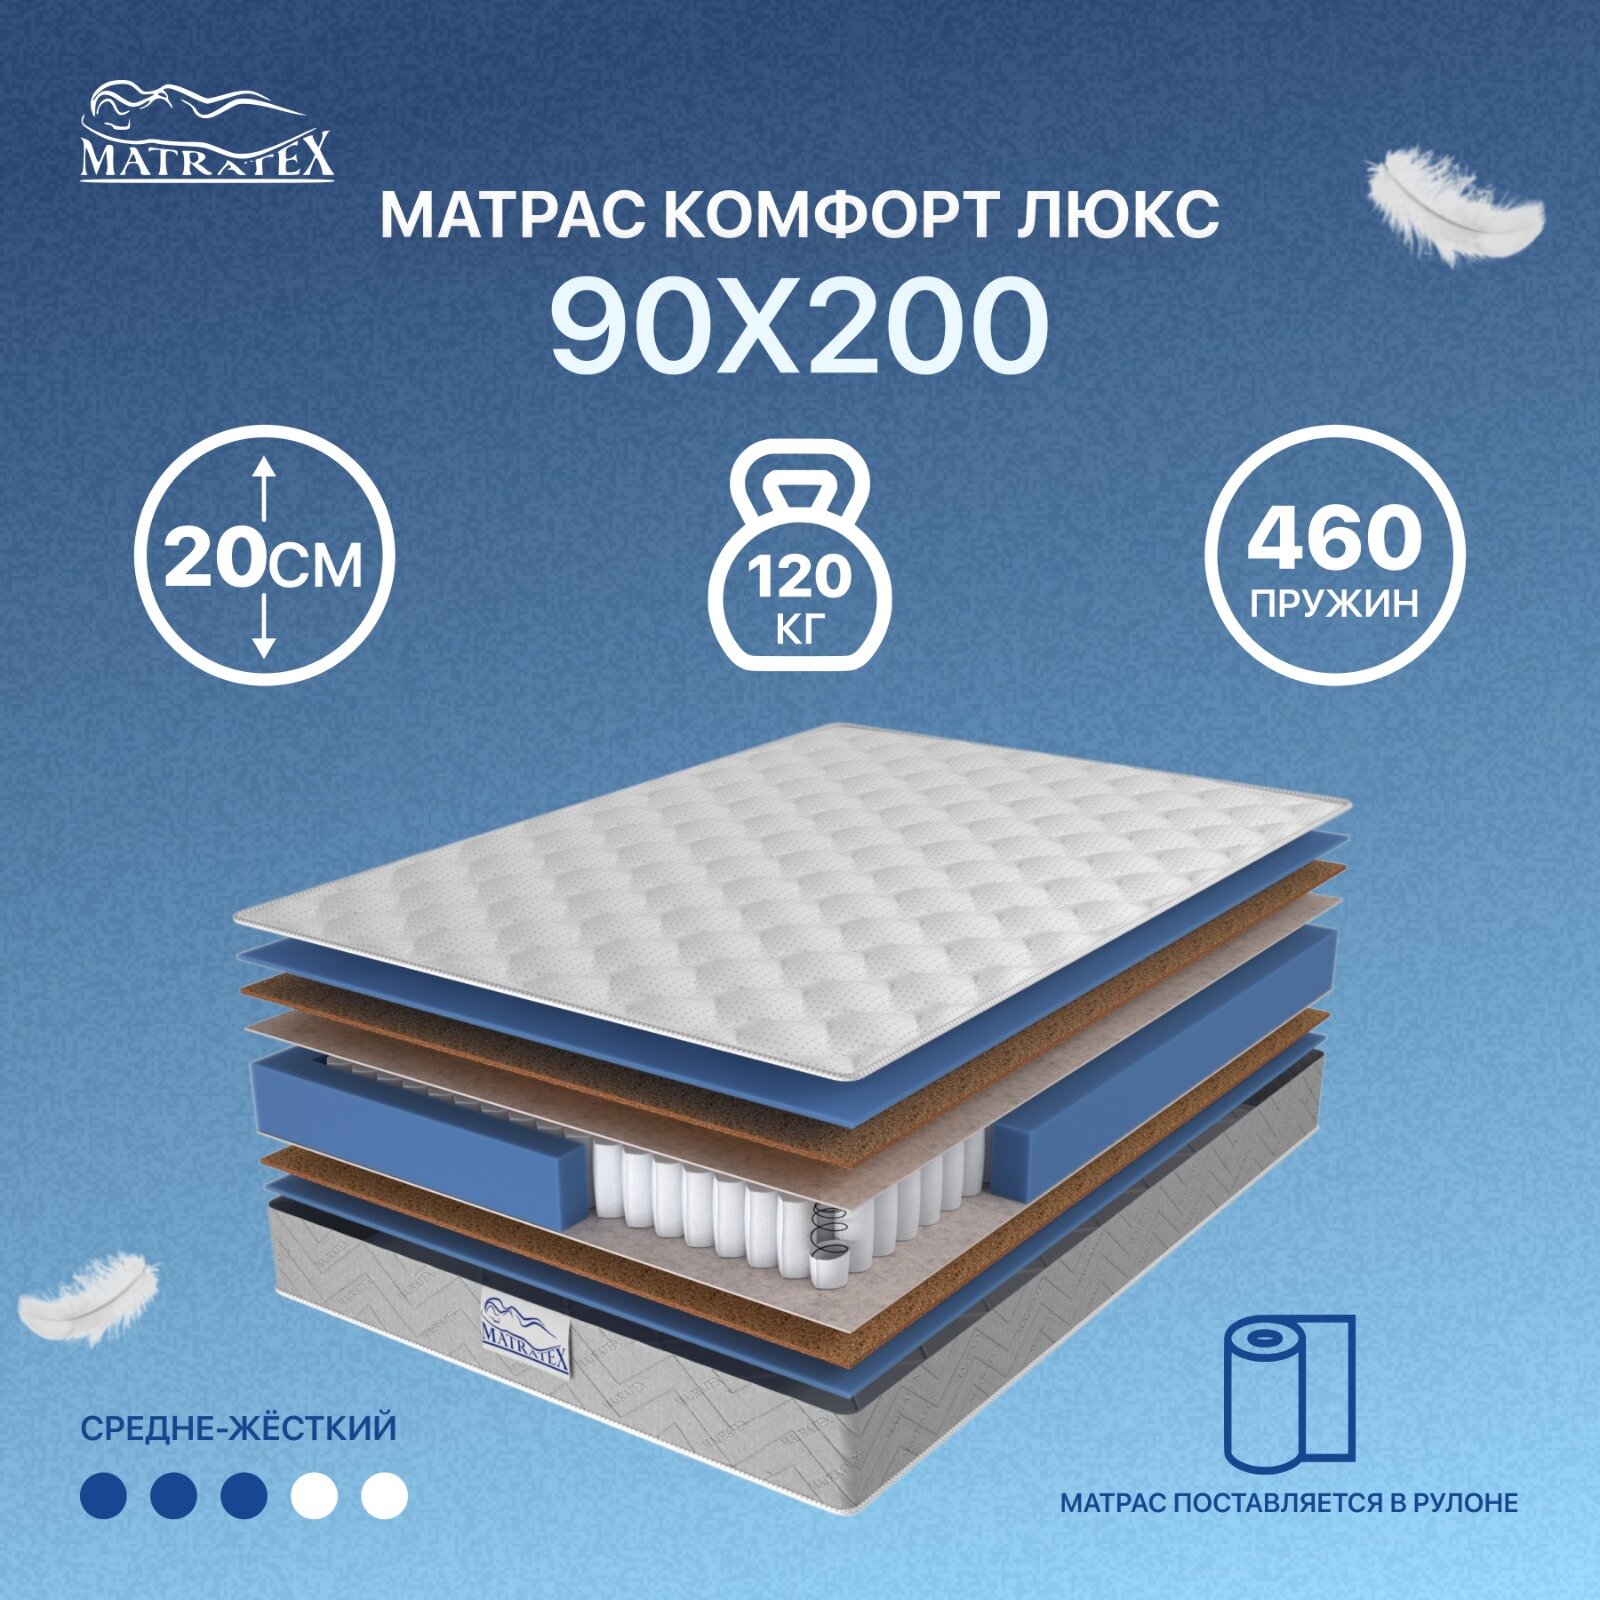 Матрас MATRATEX комфорт люкс 90х200